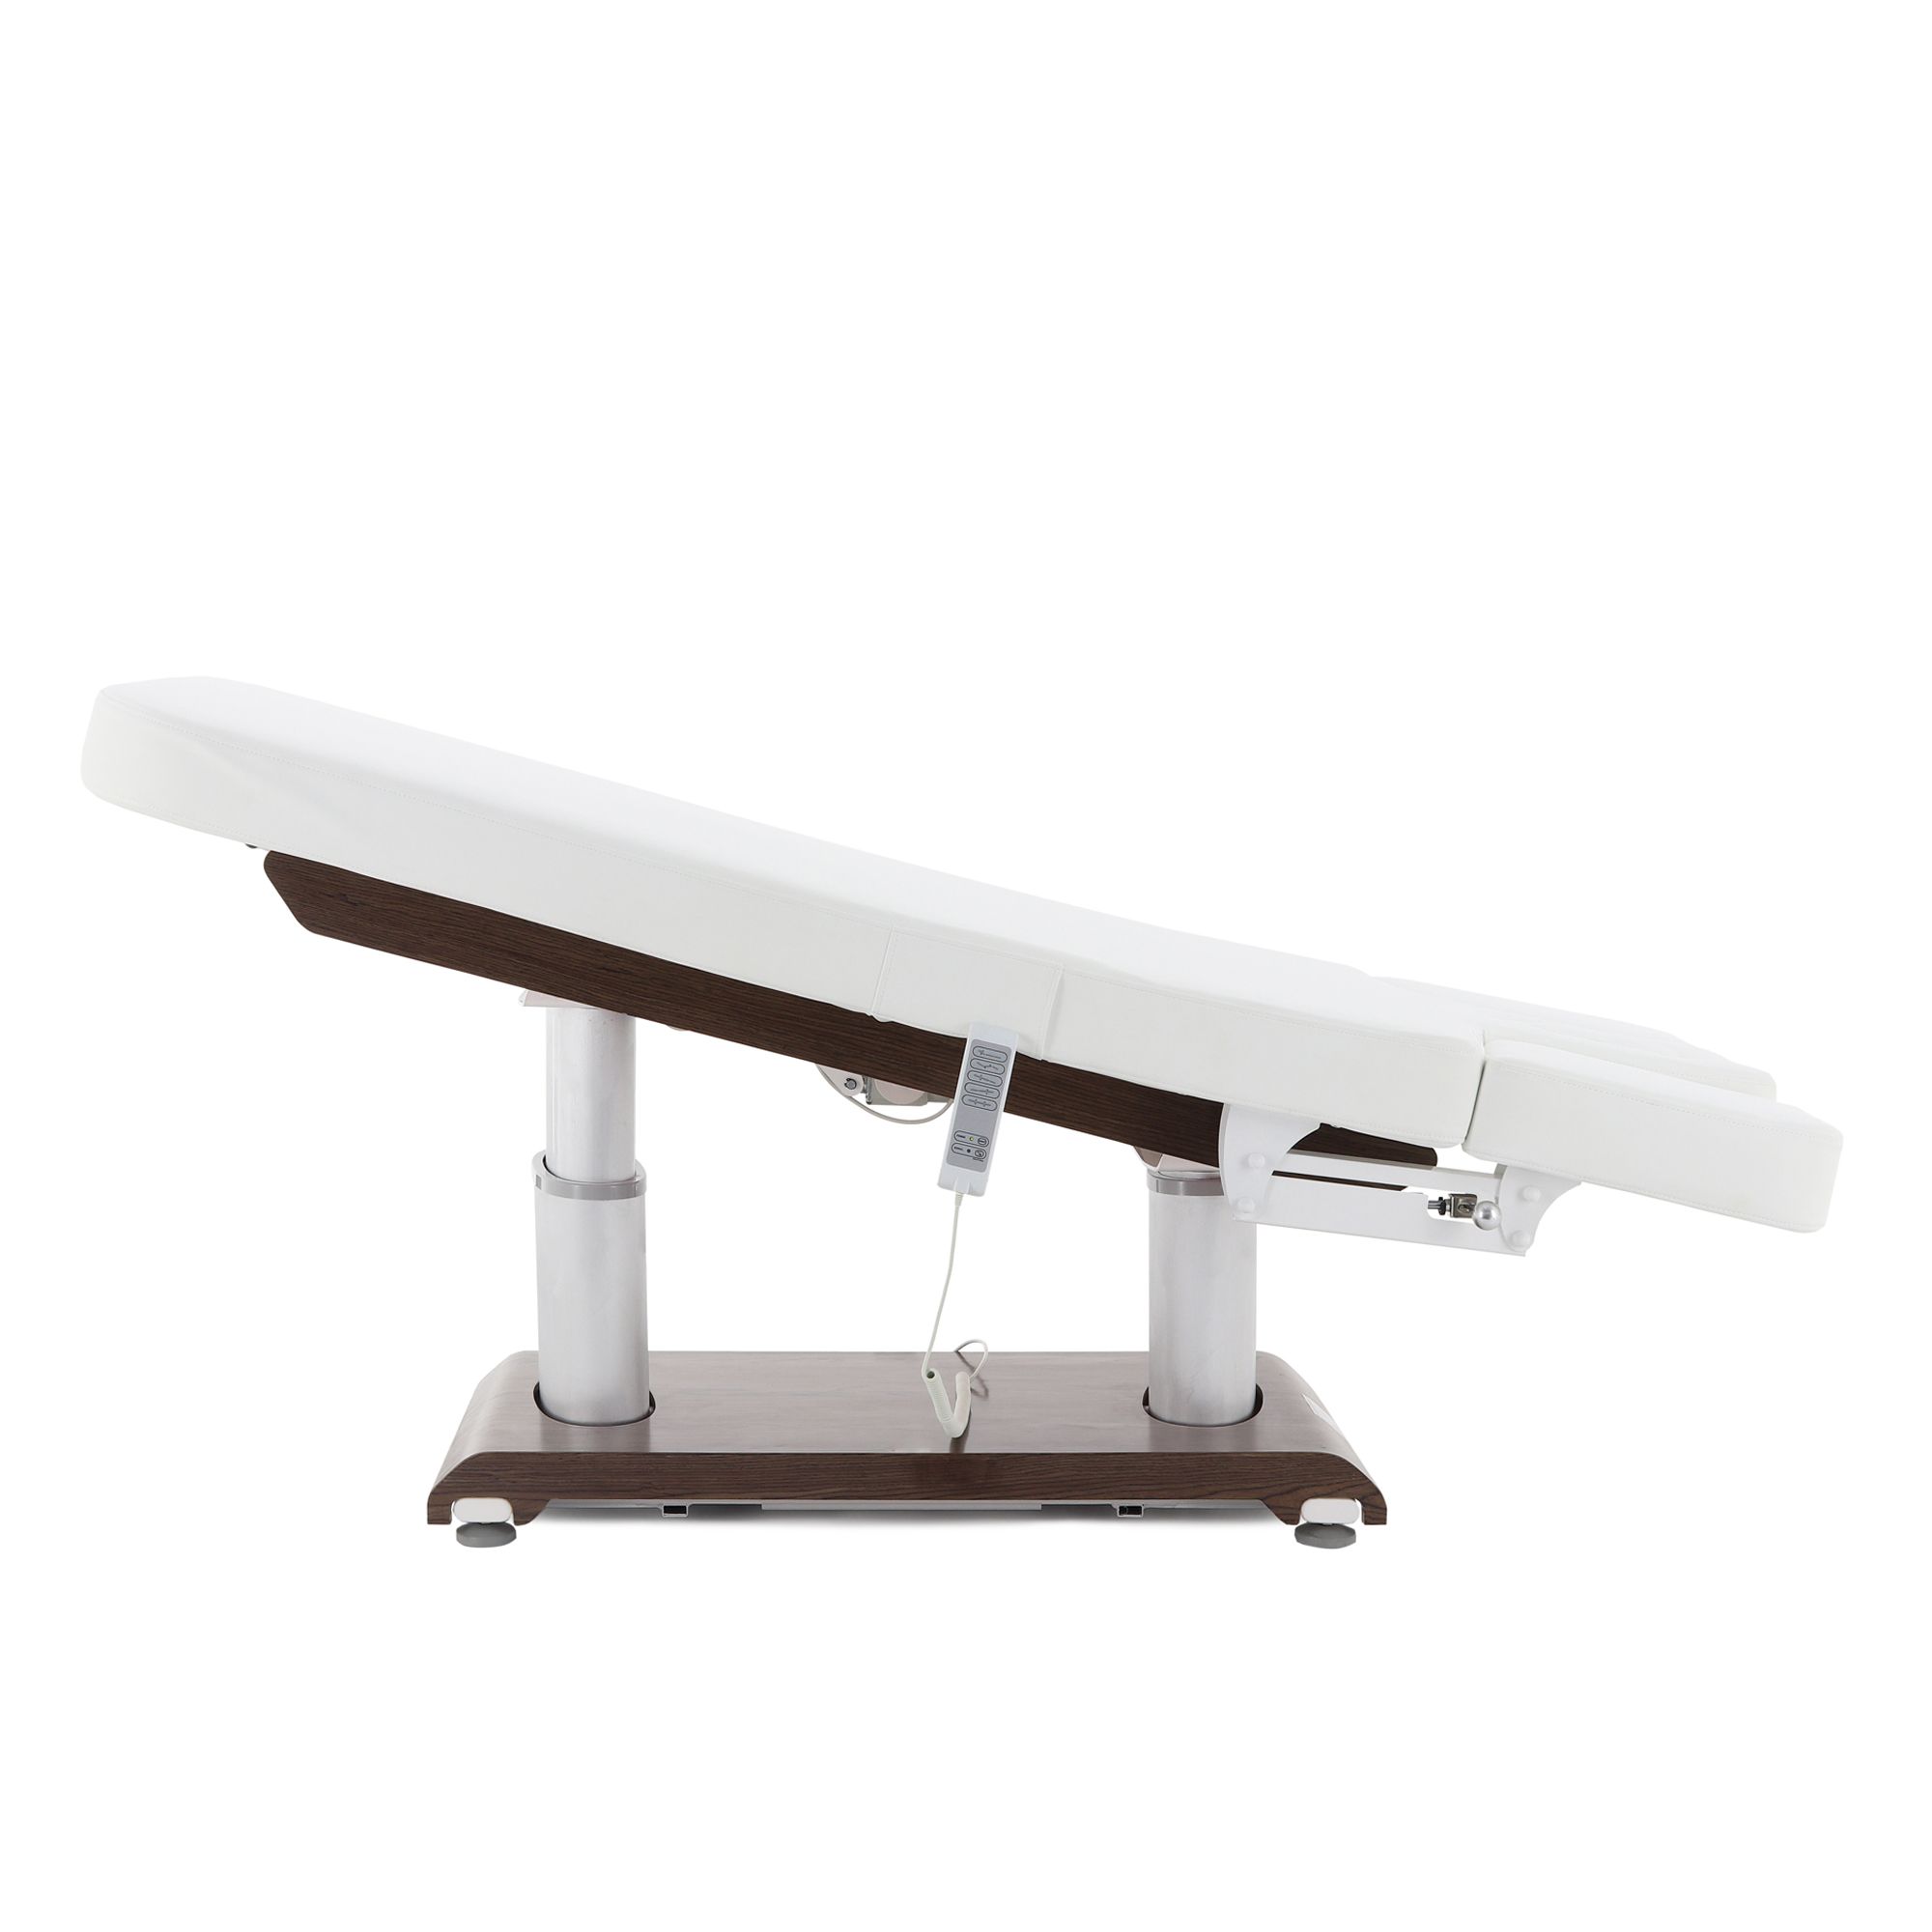 Массажный стол с электроприводом ММКМ-2 (ко-152д-02), цвет белый. Кресло косметологическое (массажное) med-mos ММКМ-2 ко-157д-00. Массажный стол Novocom 2234a MMKM-2. Электрический стол. Массажный стол ммкм